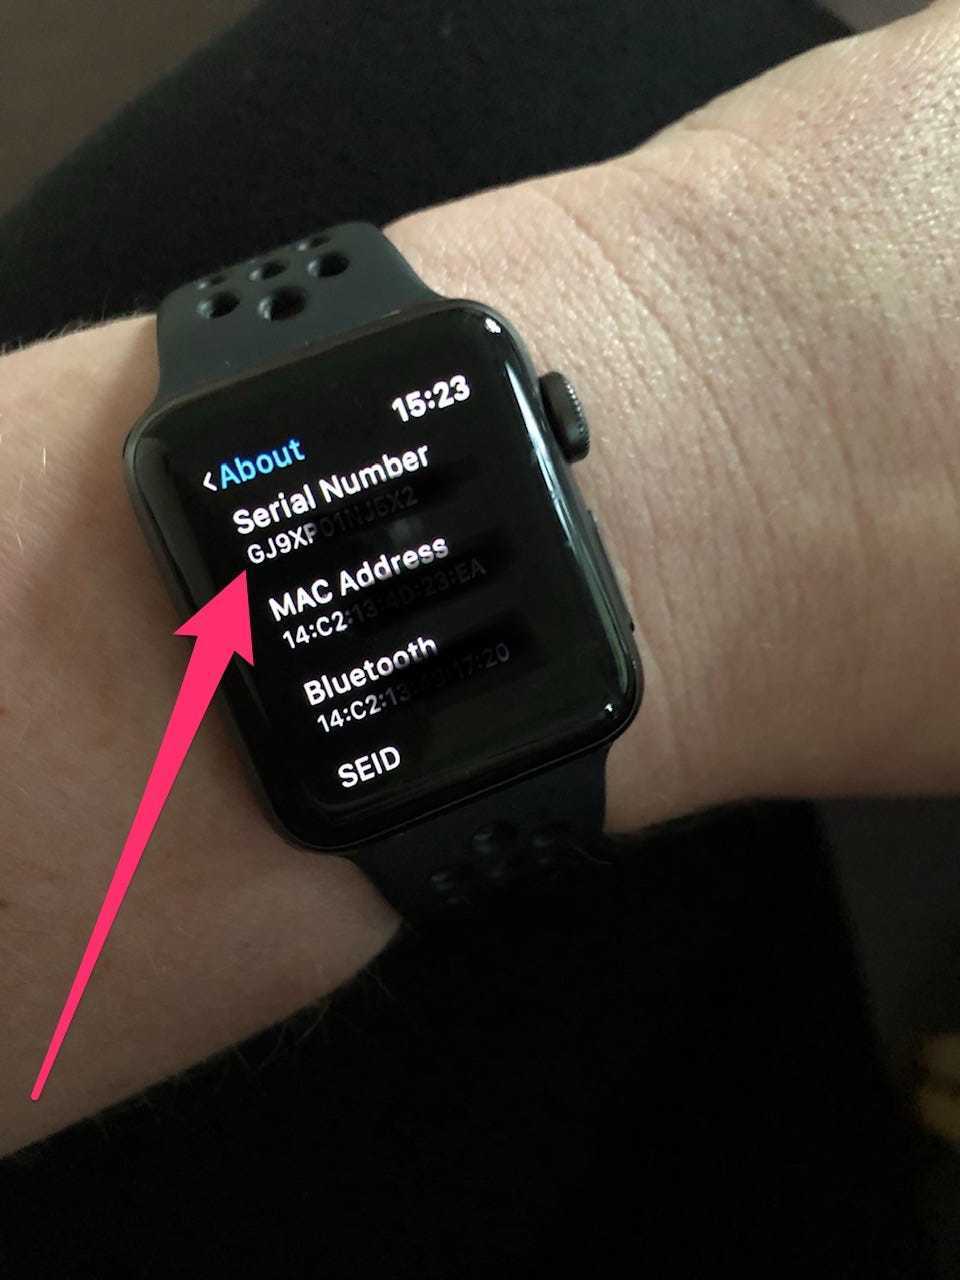 Проверить часы по номеру apple. Состояние аккумулятора АПЛ вотч. Apple watch Ultra 2 чек. Батарей на эпол вочь емуость. Серийный номер Apple watch.